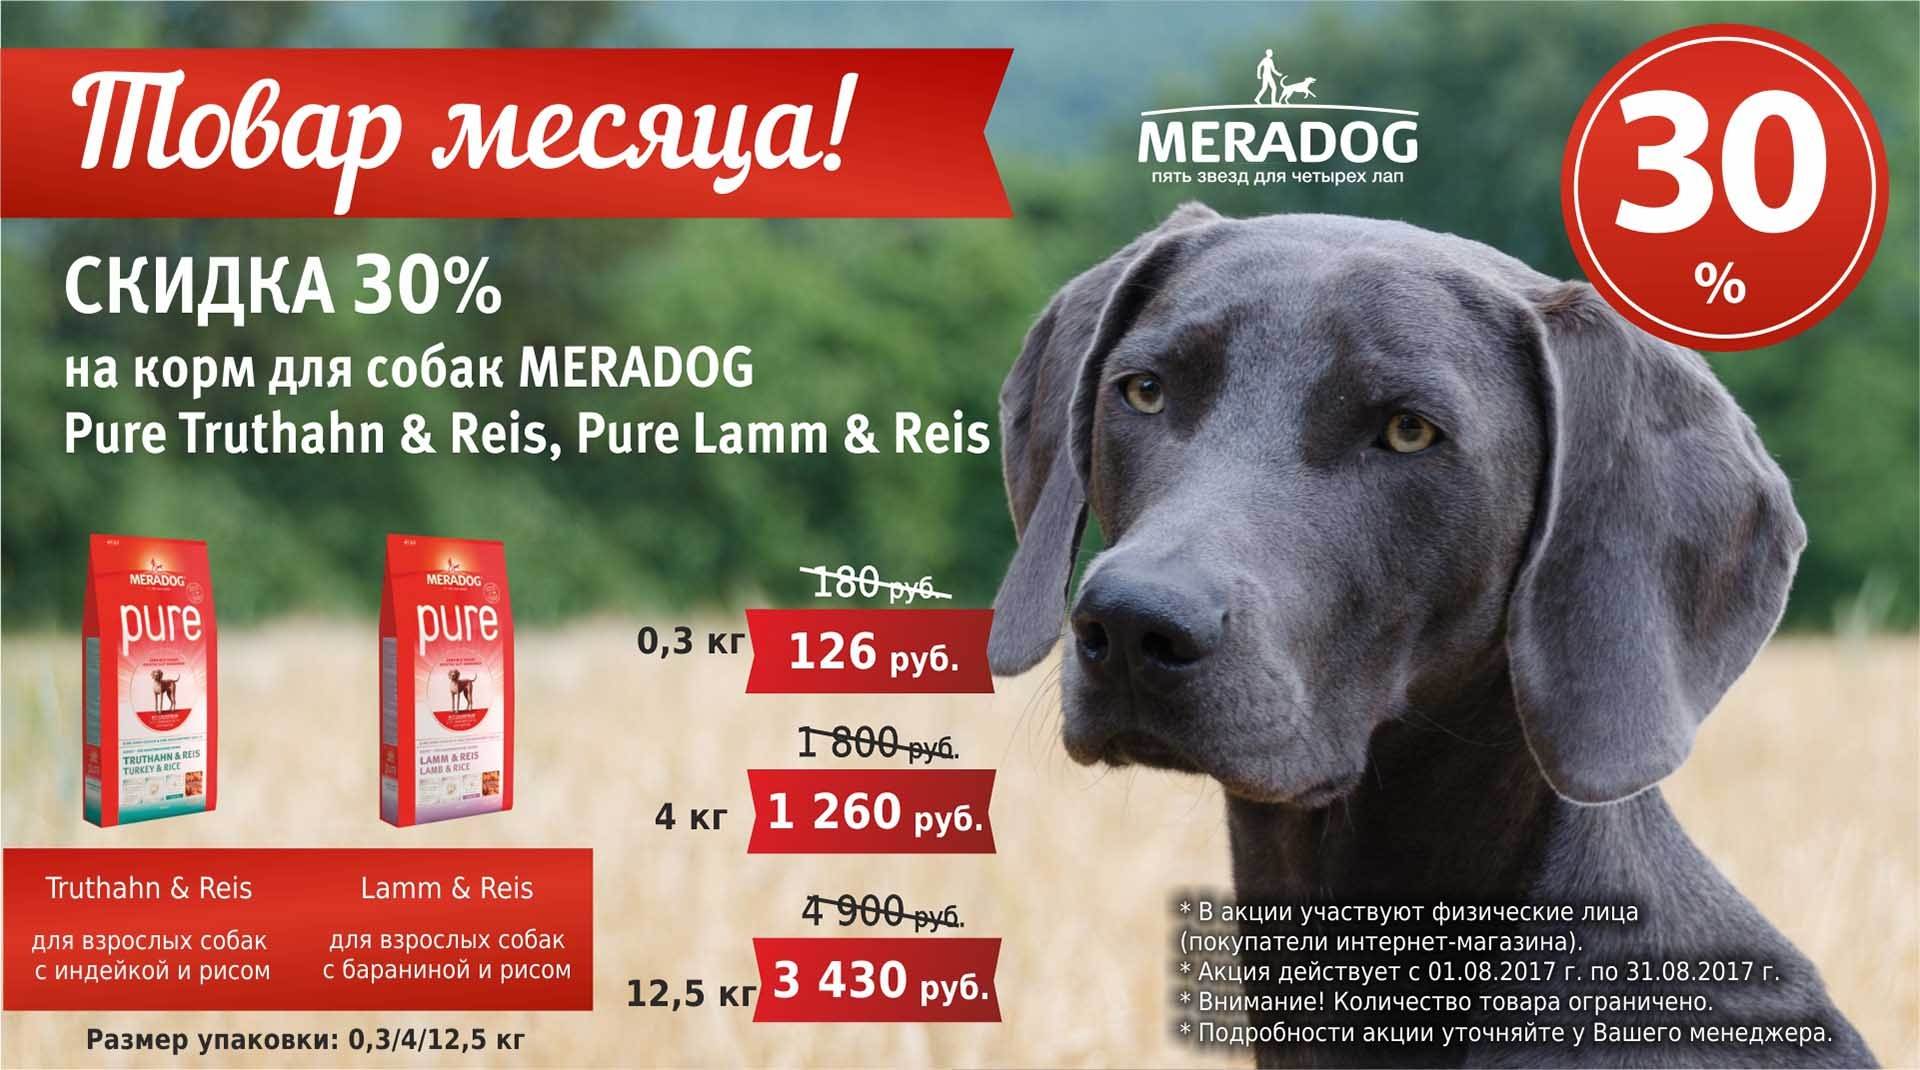 Корм meradog для собак - отзывы ветеринаров и владельцев животных